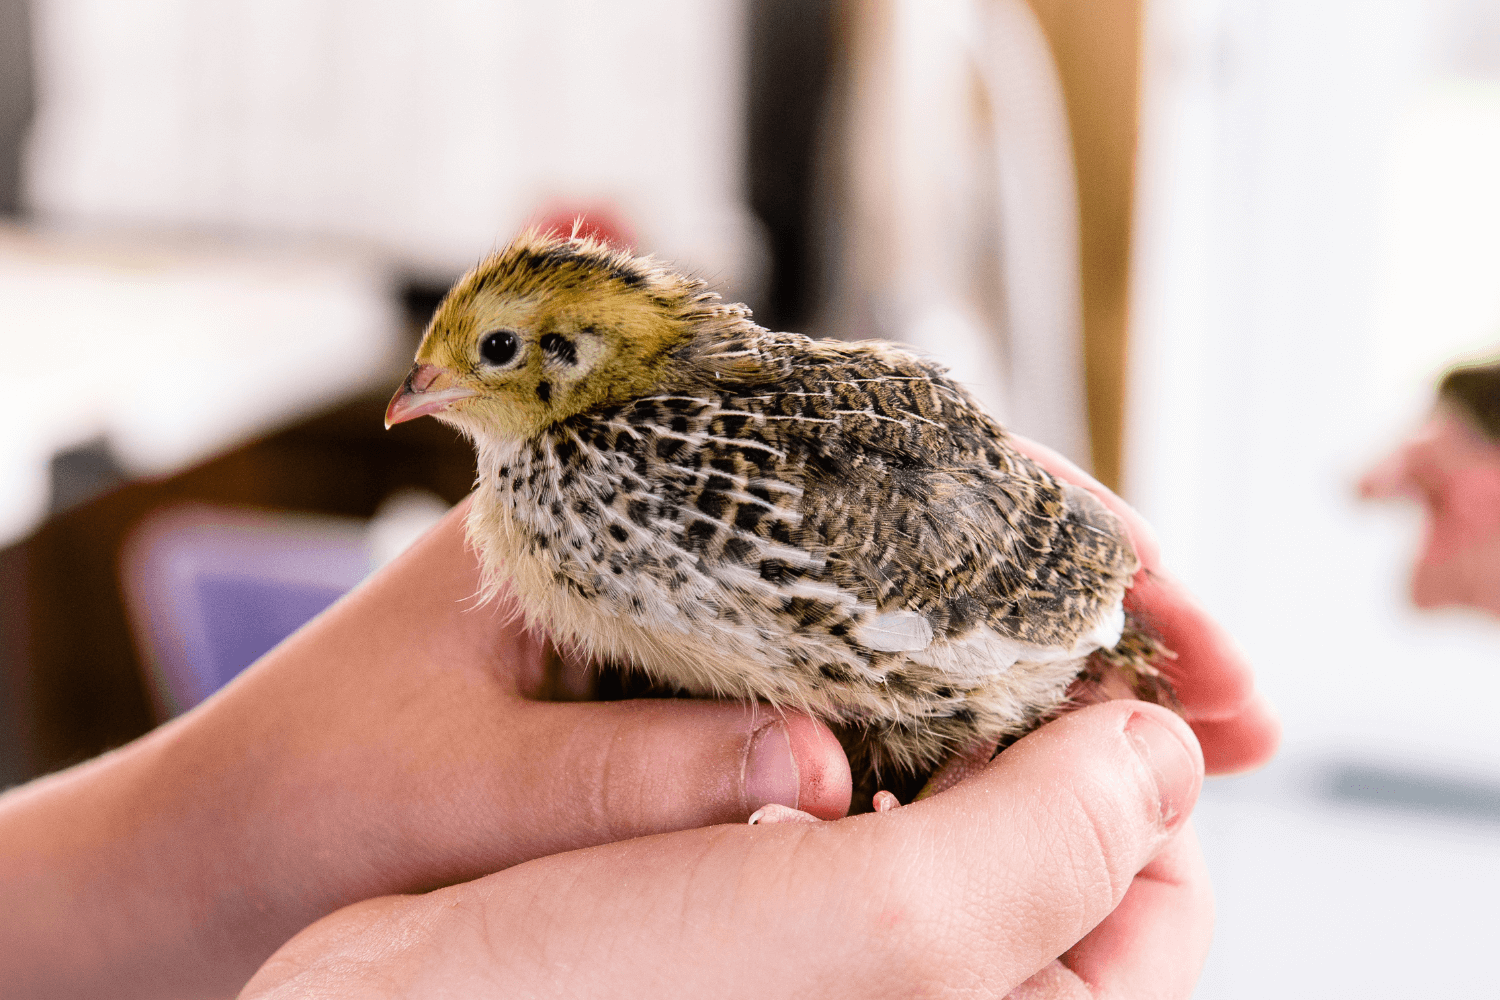 Holding a small cute quail